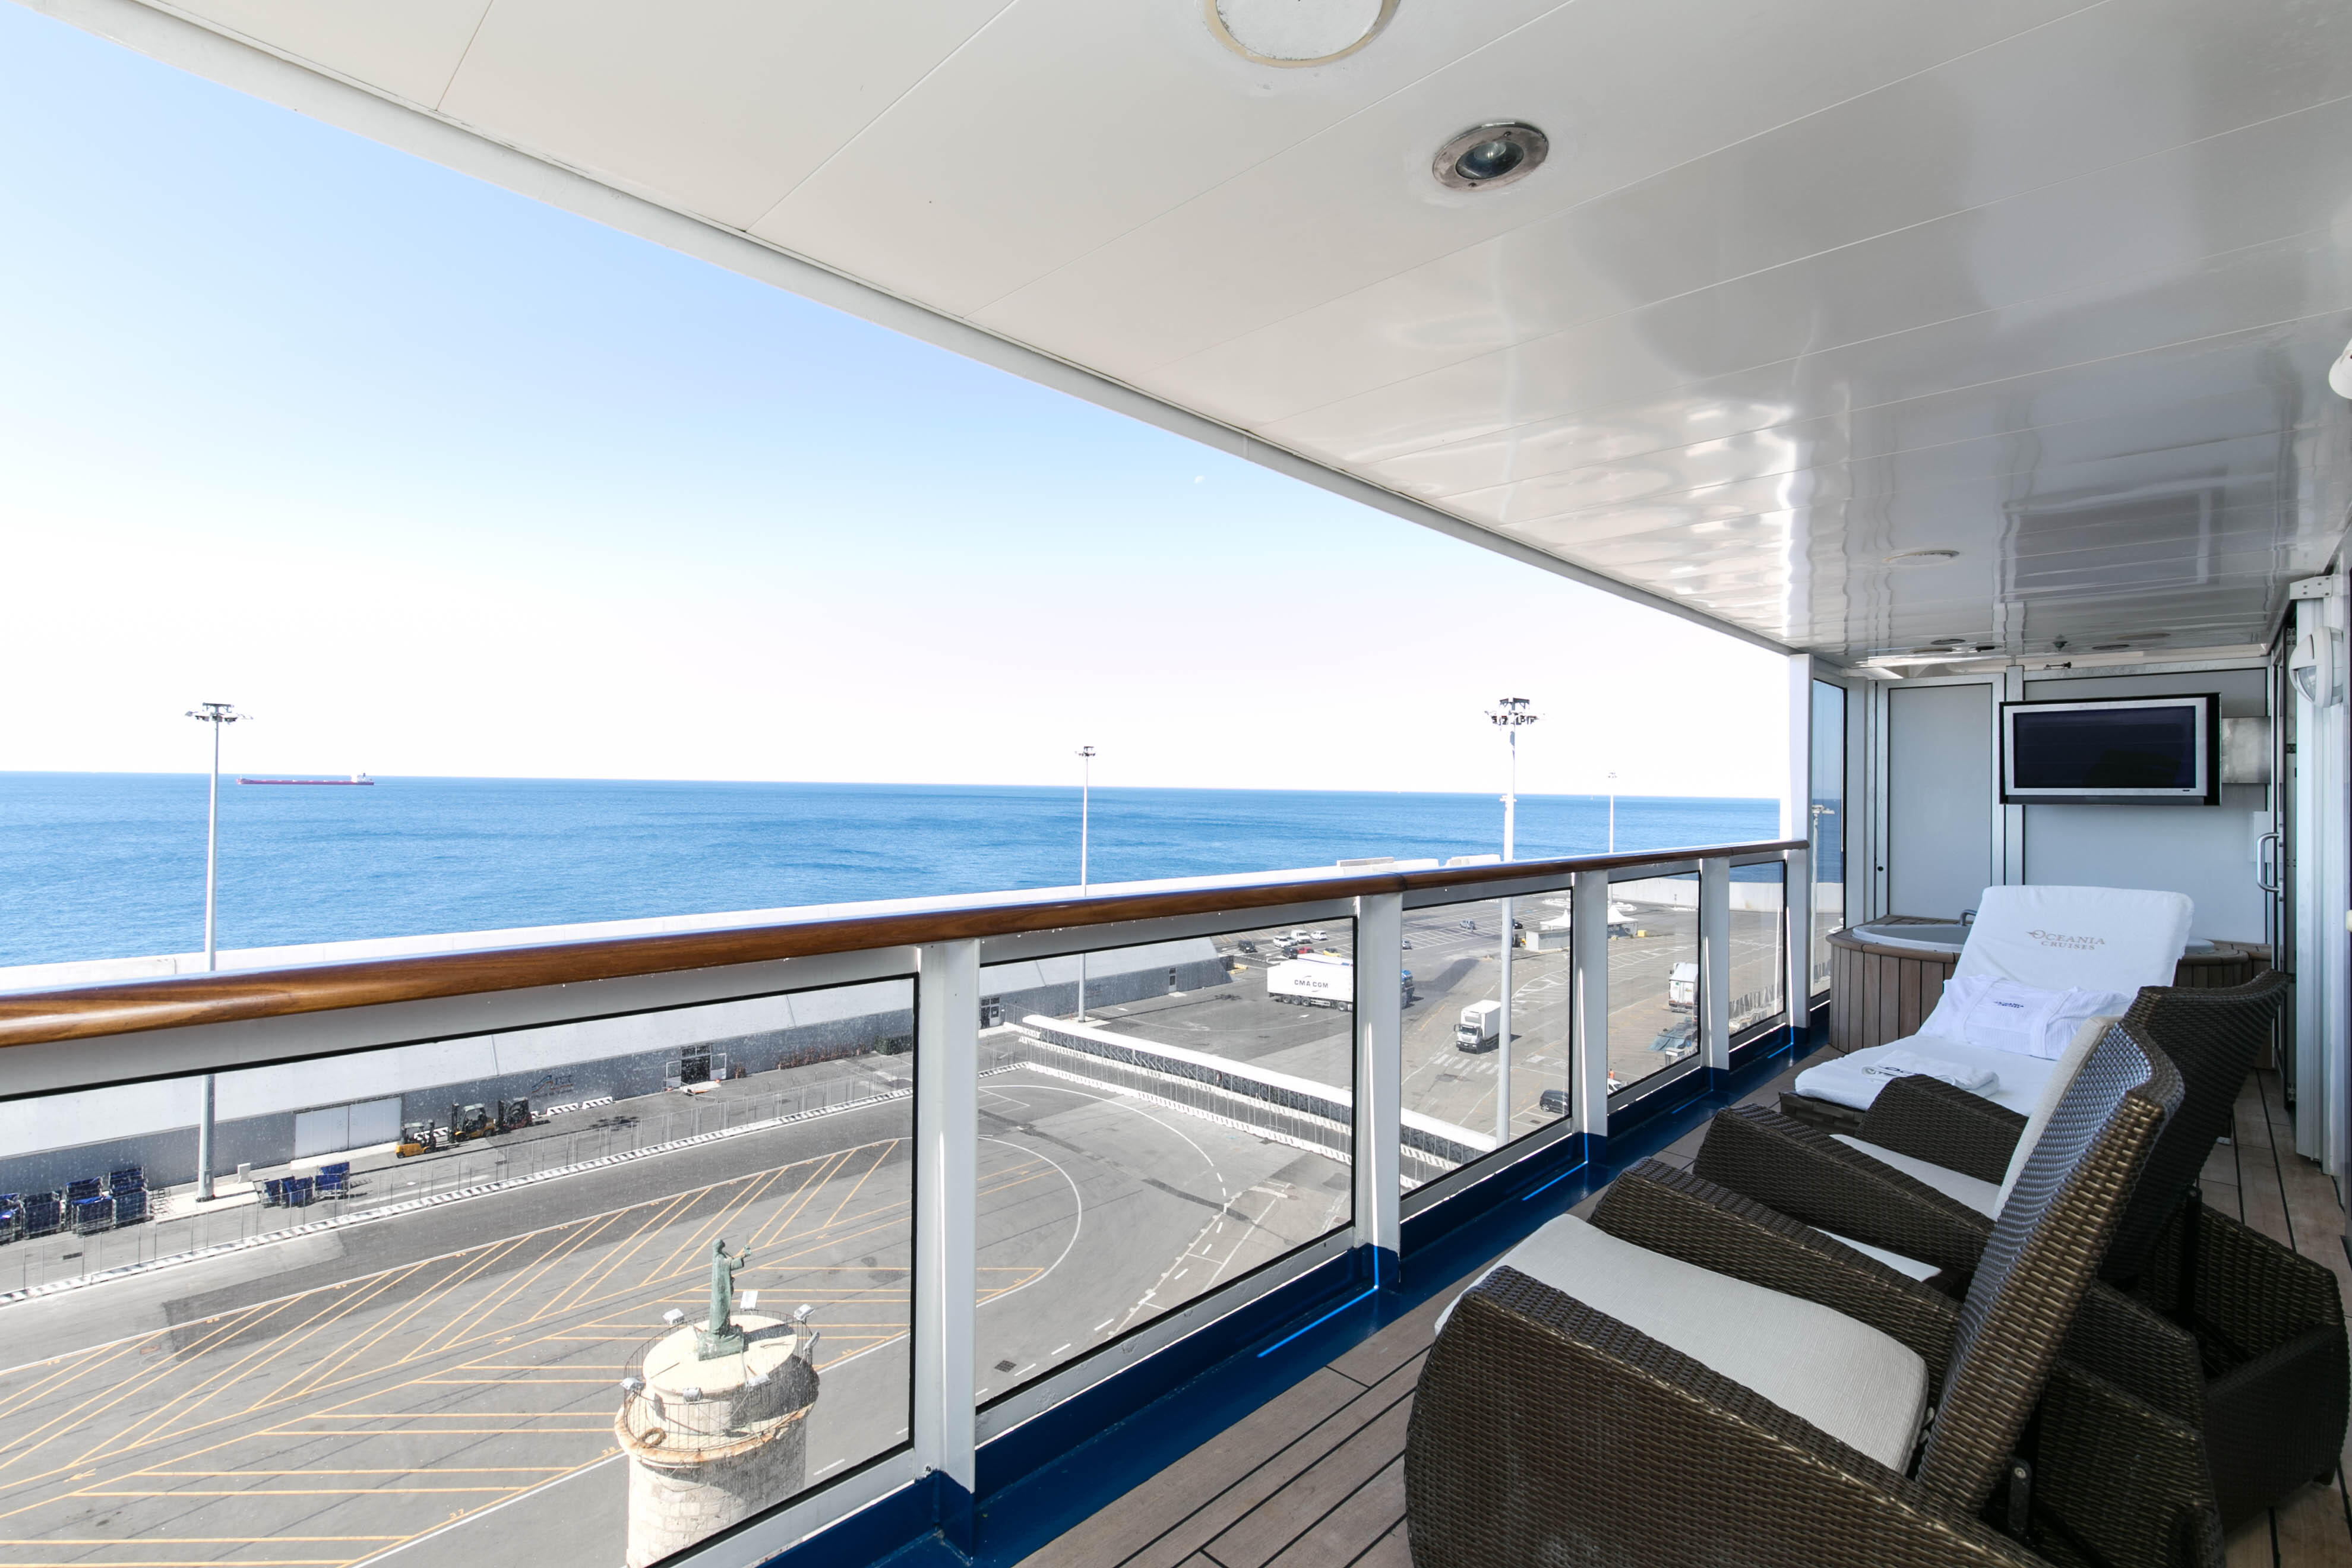 basak bastug recommends Nude Cruise Balcony